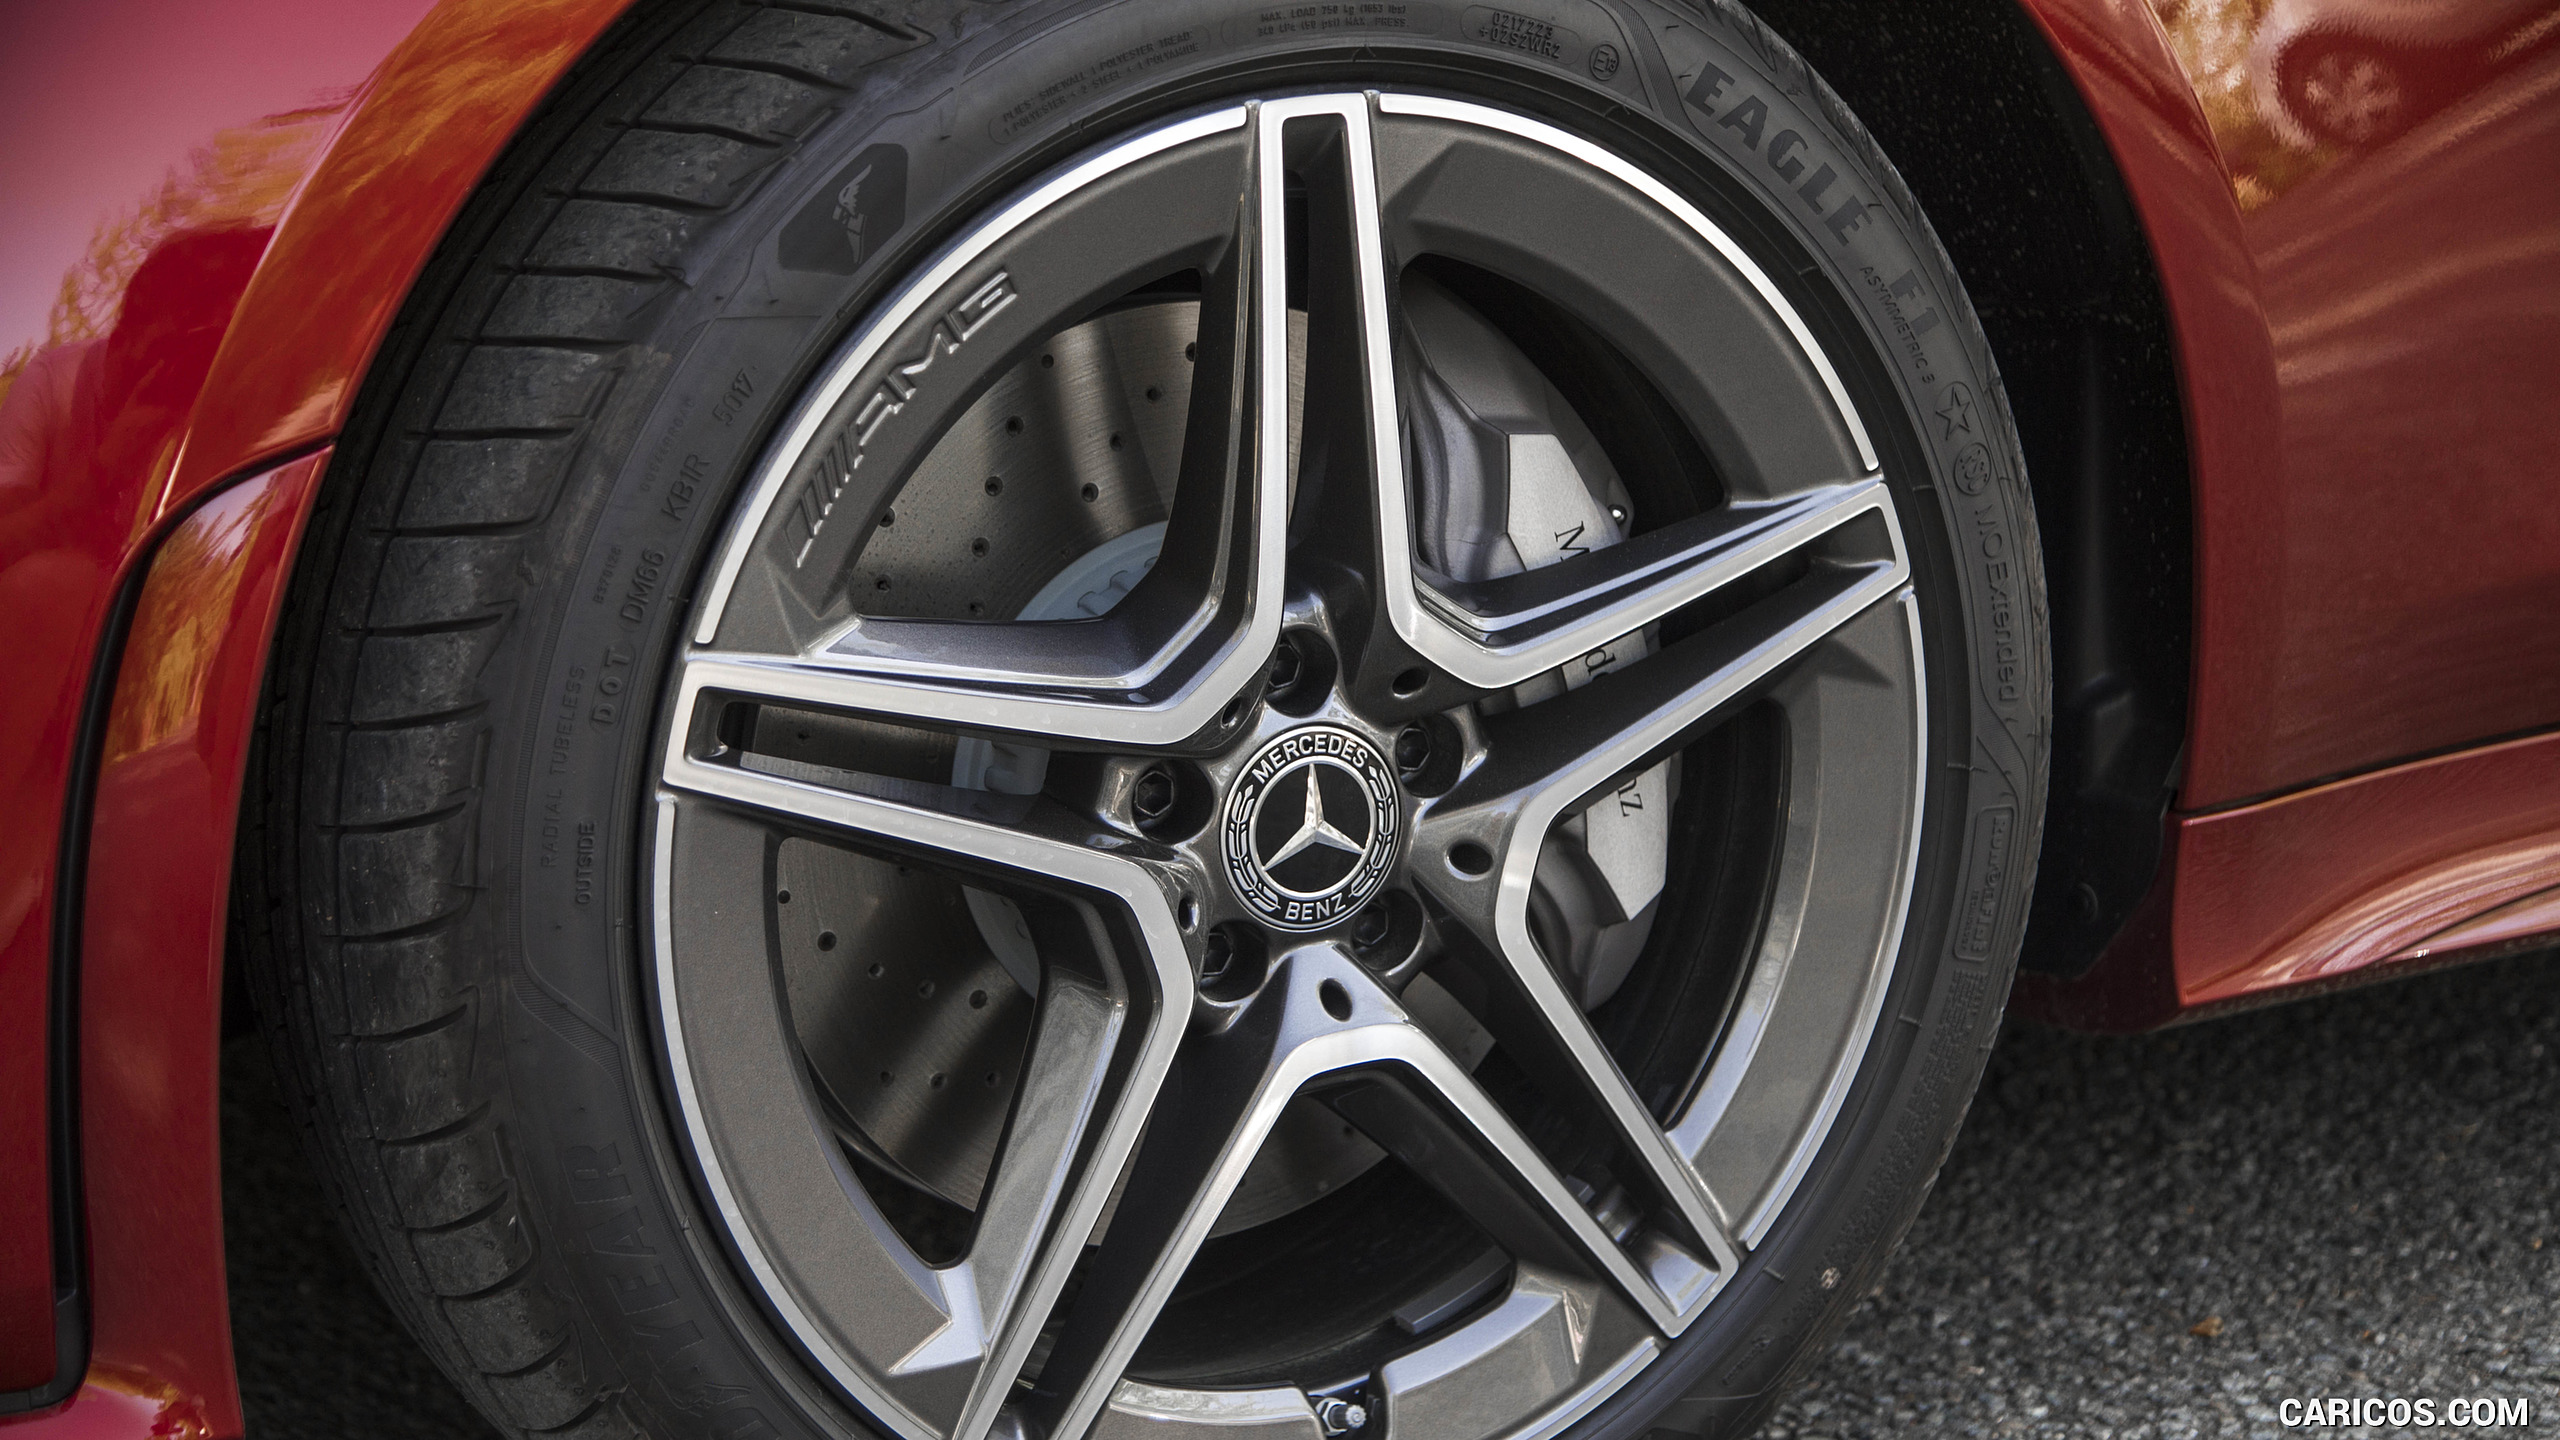 2019 Mercedes-Benz CLS 450 4MATIC (US-Spec) - Wheel, #205 of 231